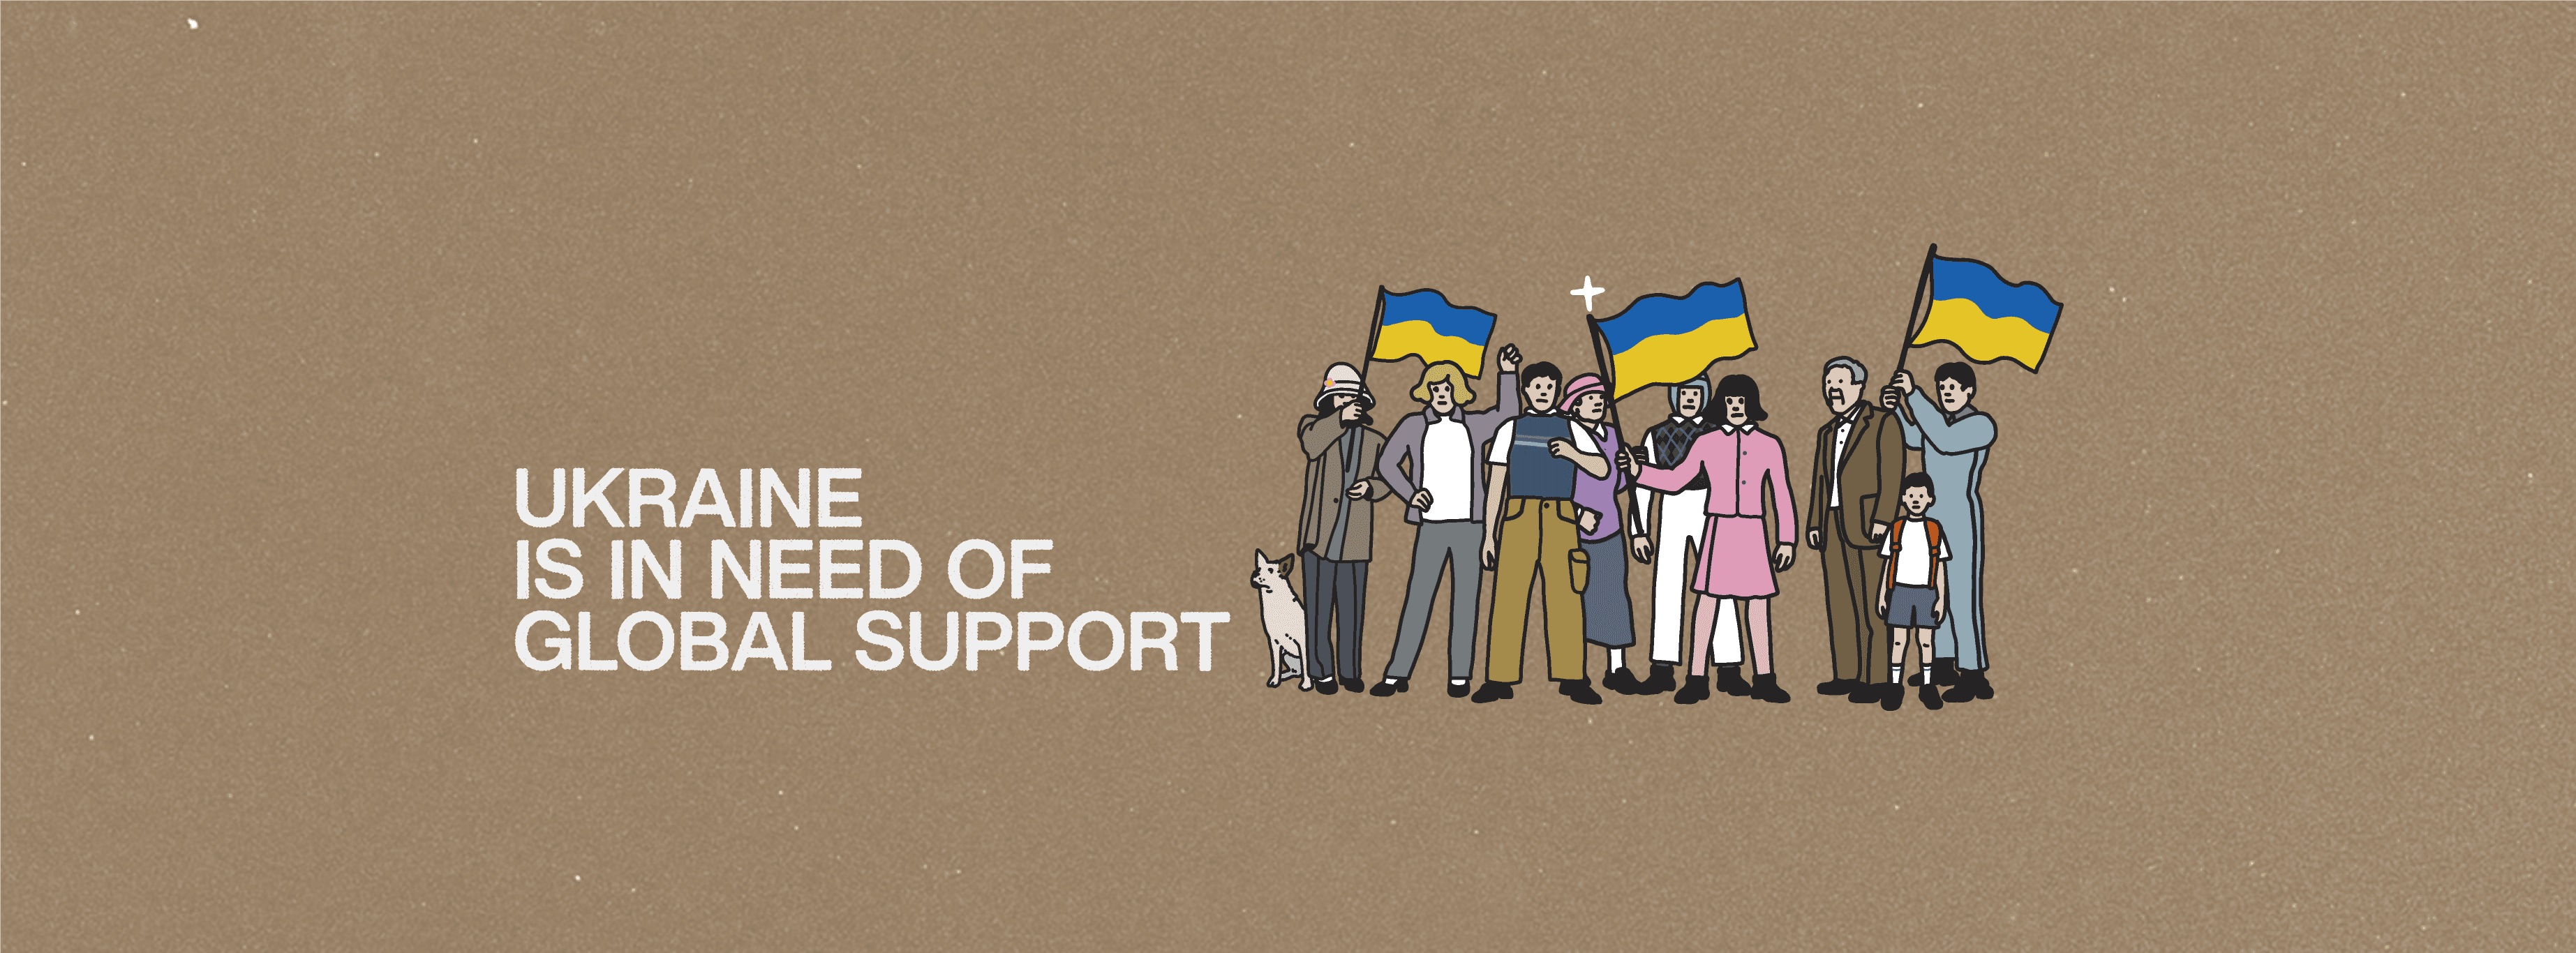 Fund4Ukraine banner